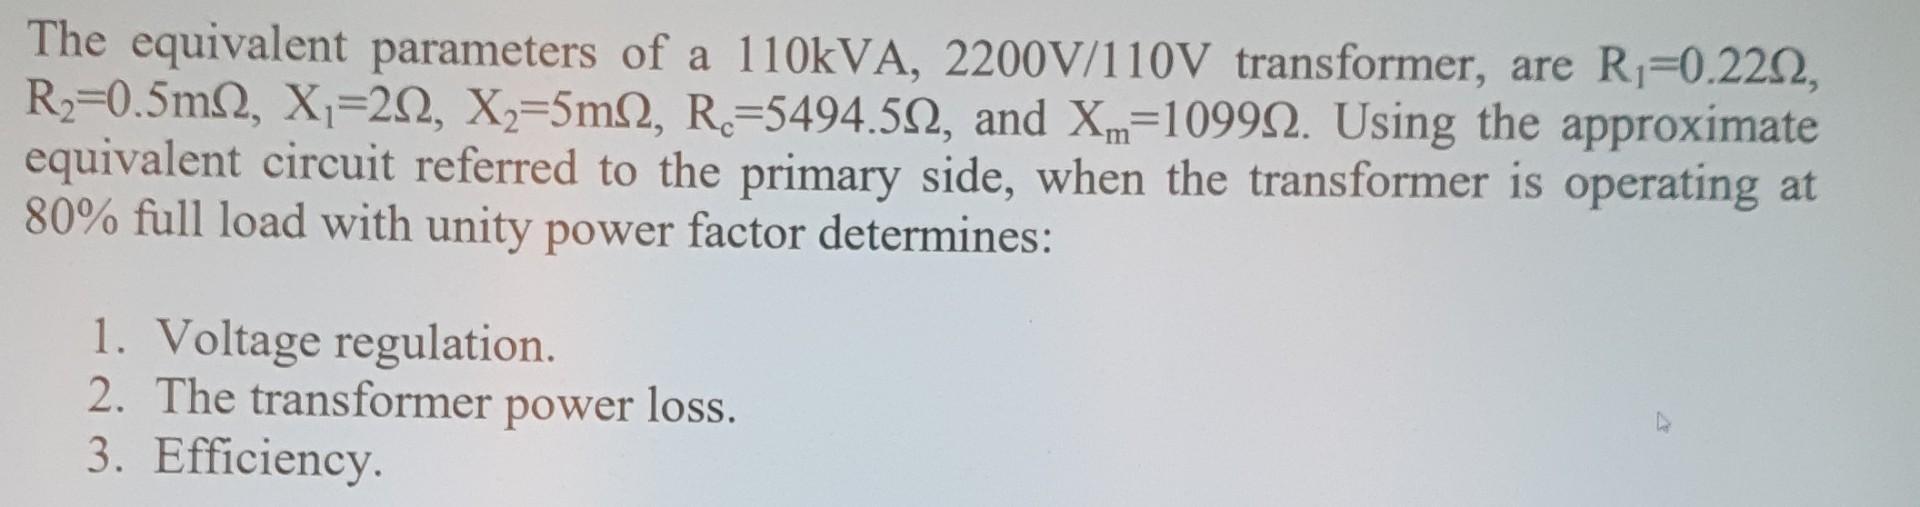 The equivalent parameters of a 110kVA, 2200V/110V transformer, are Ri=0.2222, R2=0.5m 2, X1=212, X2=5m 2, R2=5494.512, and Xm